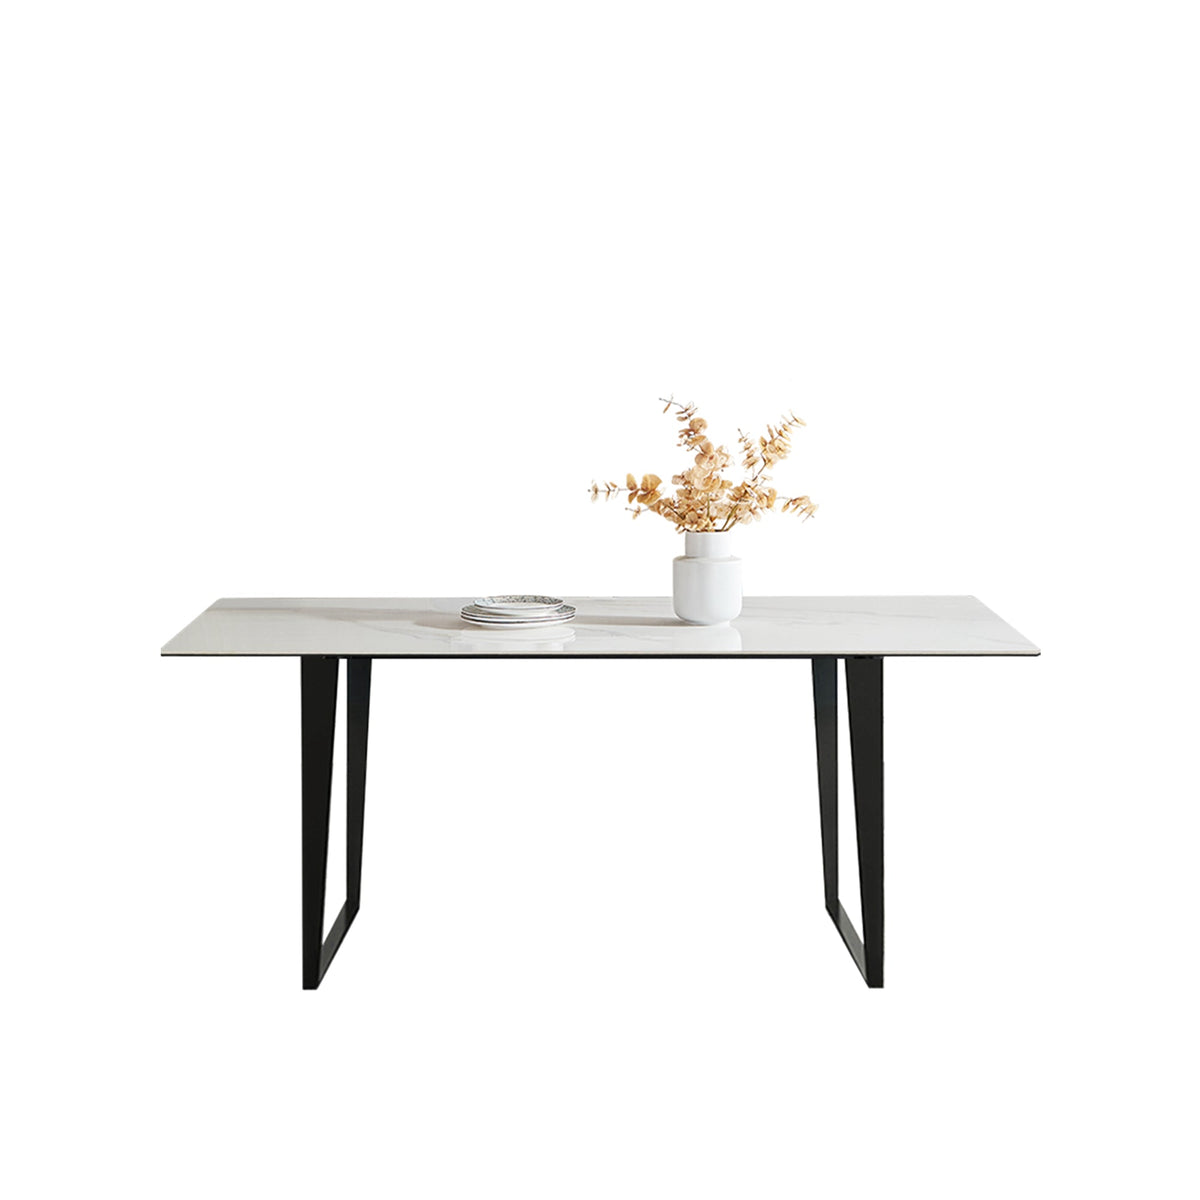 （限量現貨搶購中）TORROX 複合岩板餐桌, D型腳座, 180*90 公分, 馬肚形